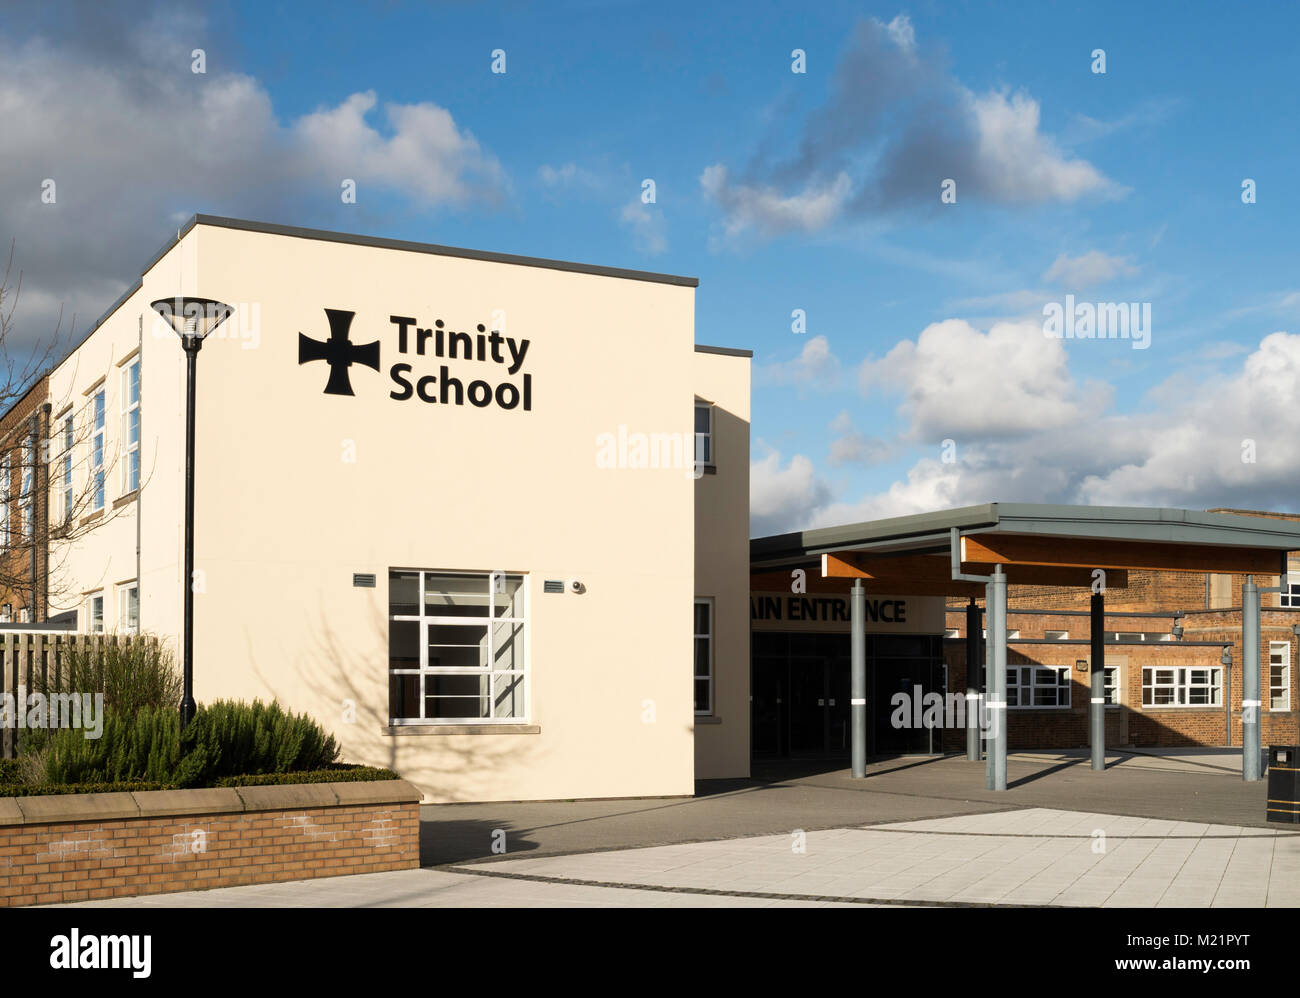 The main entrance of Trinity School, a Church of England Academy or faith school, Carlisle, England, UK Stock Photo